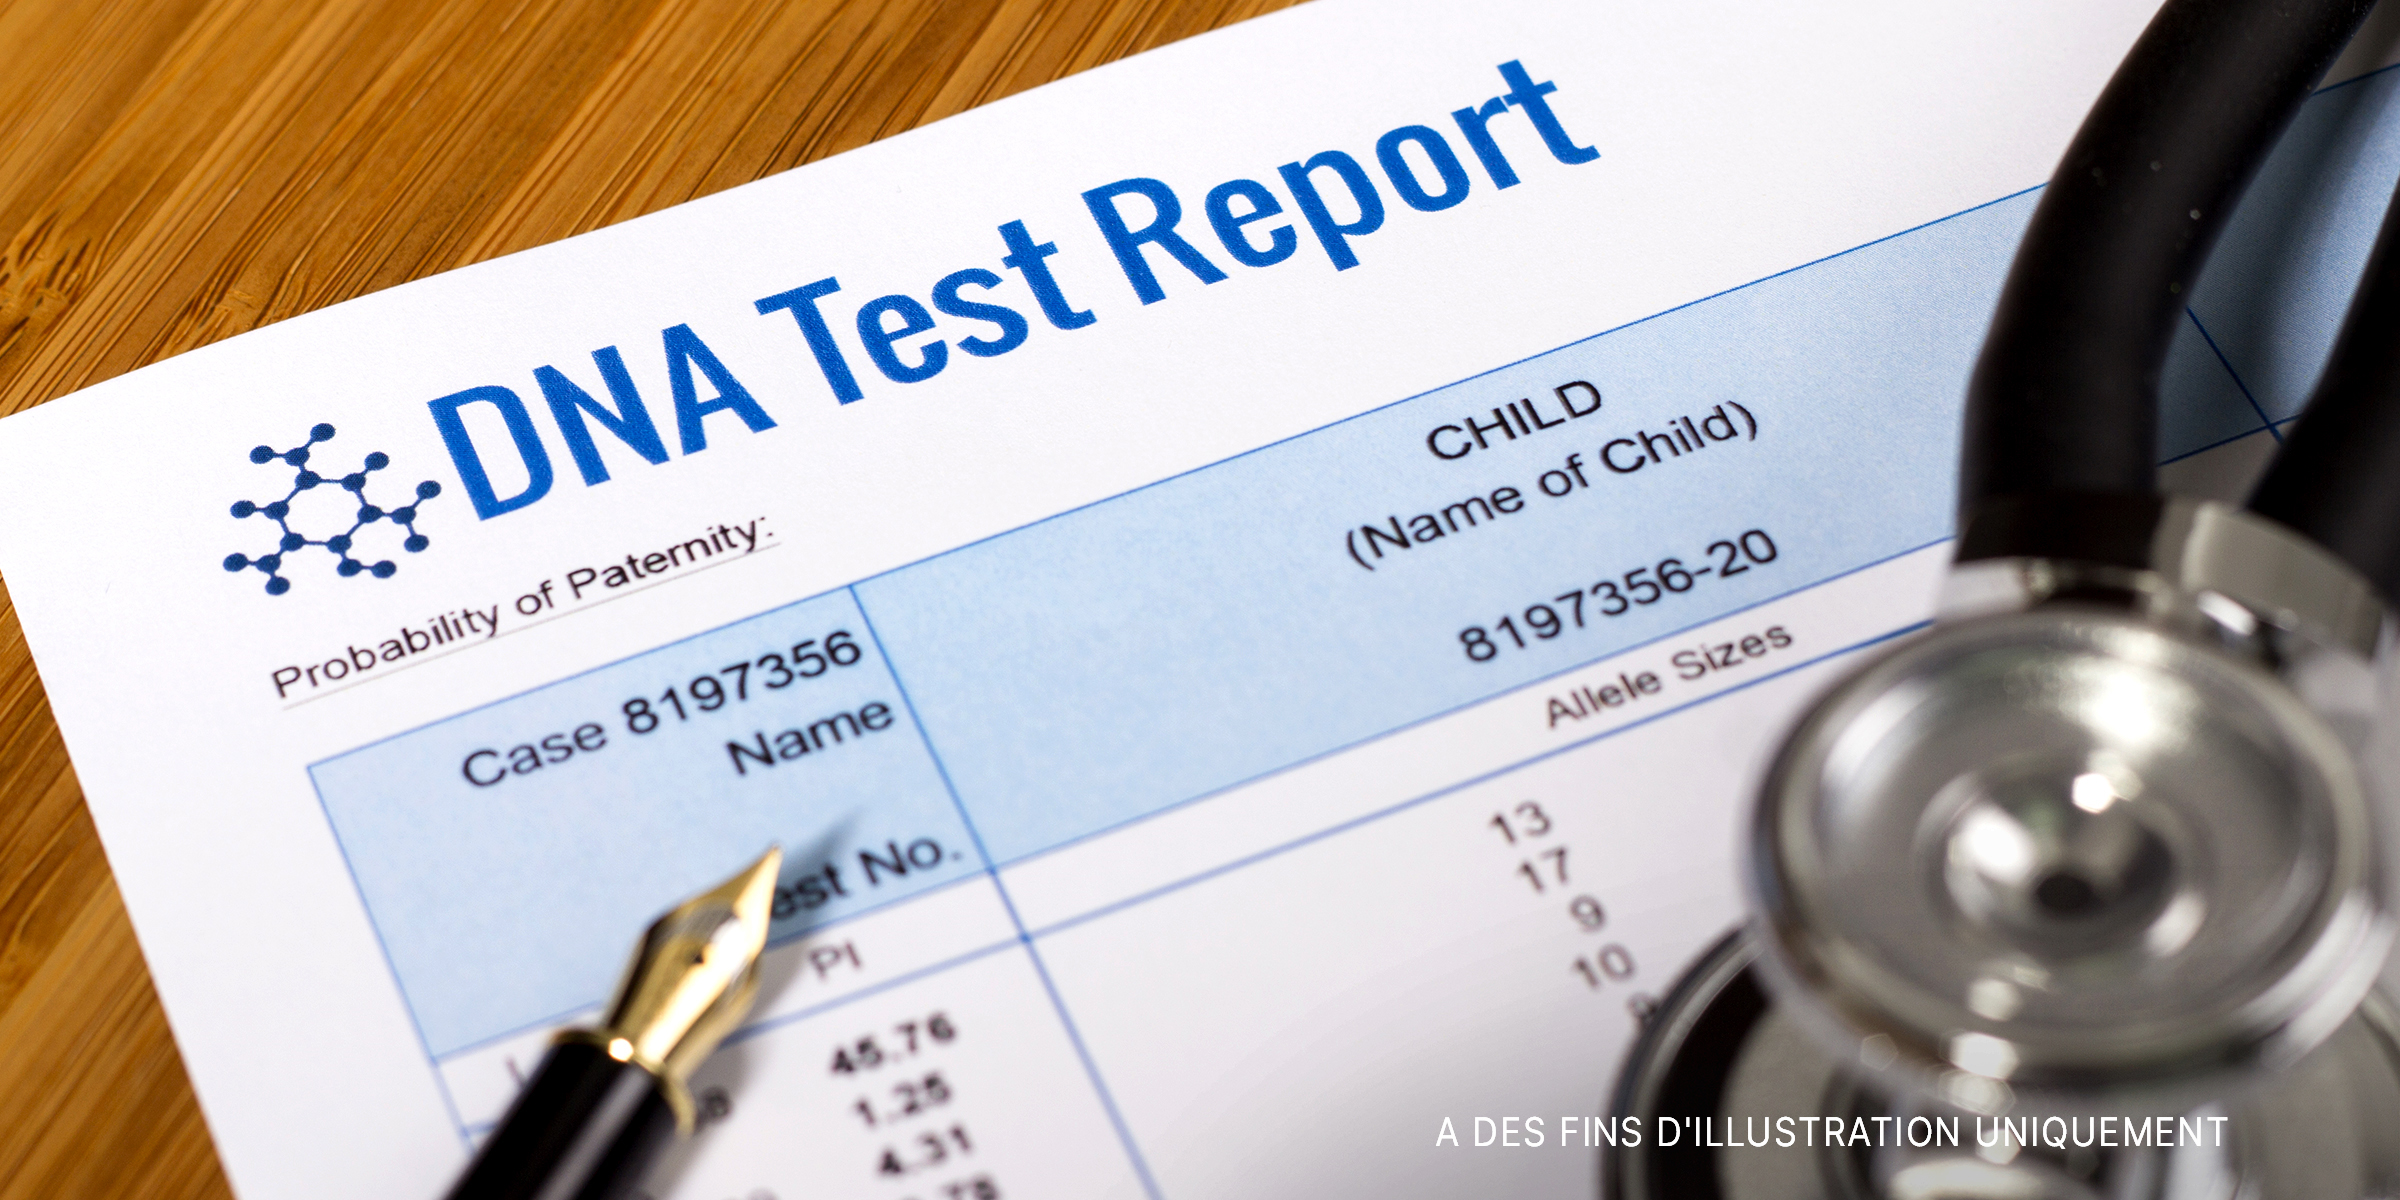 Résultats d'un test ADN | Source : Shutterstock